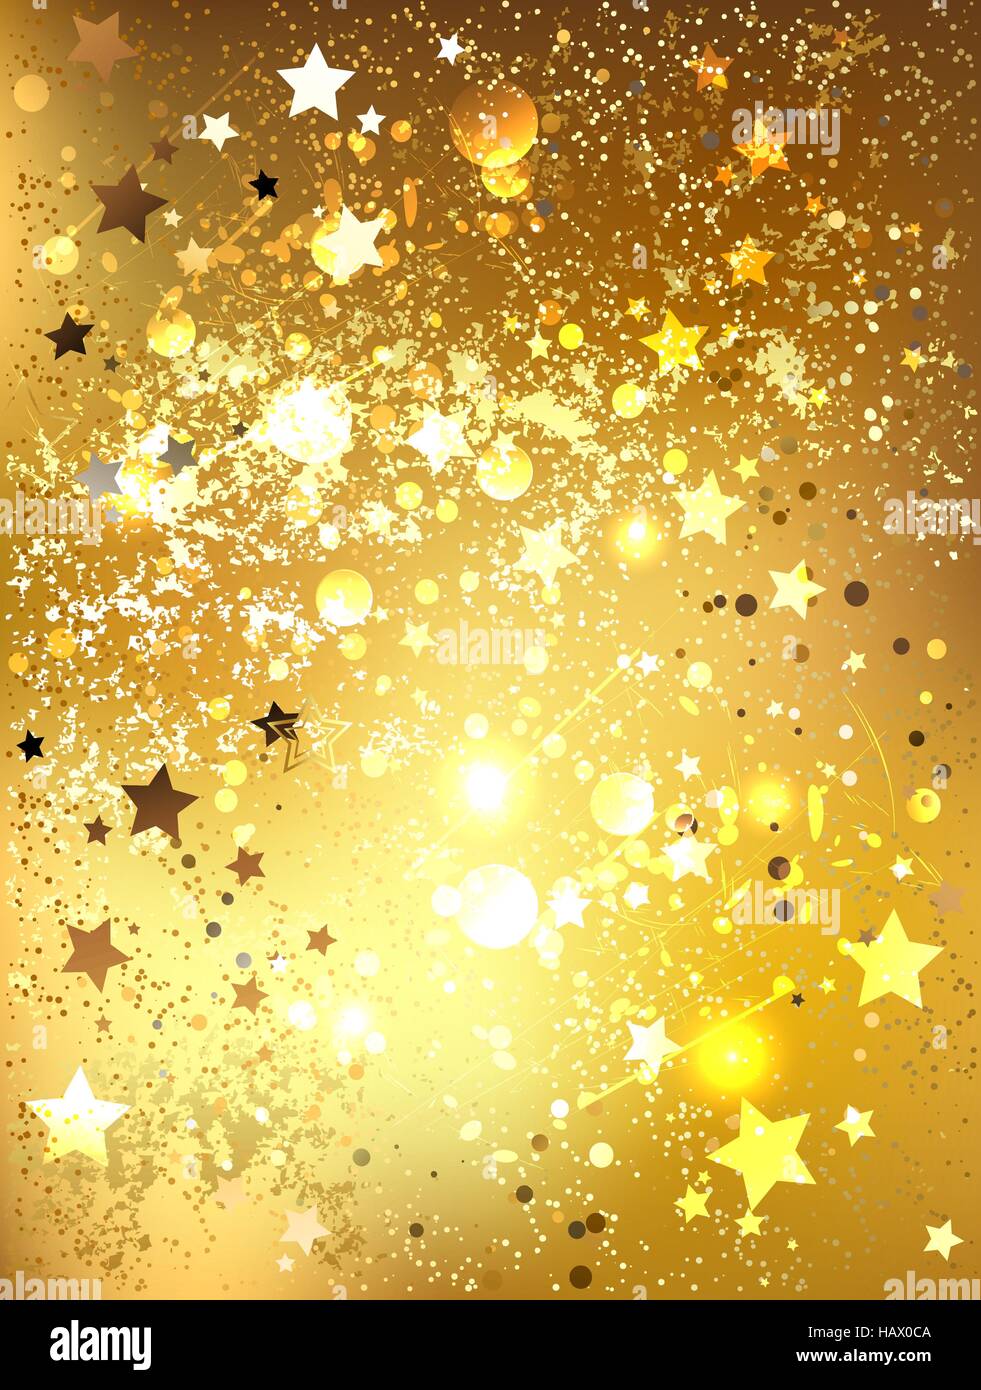 Hintergrund der Goldfolie mit glänzenden goldenen Sternen. Stock Vektor